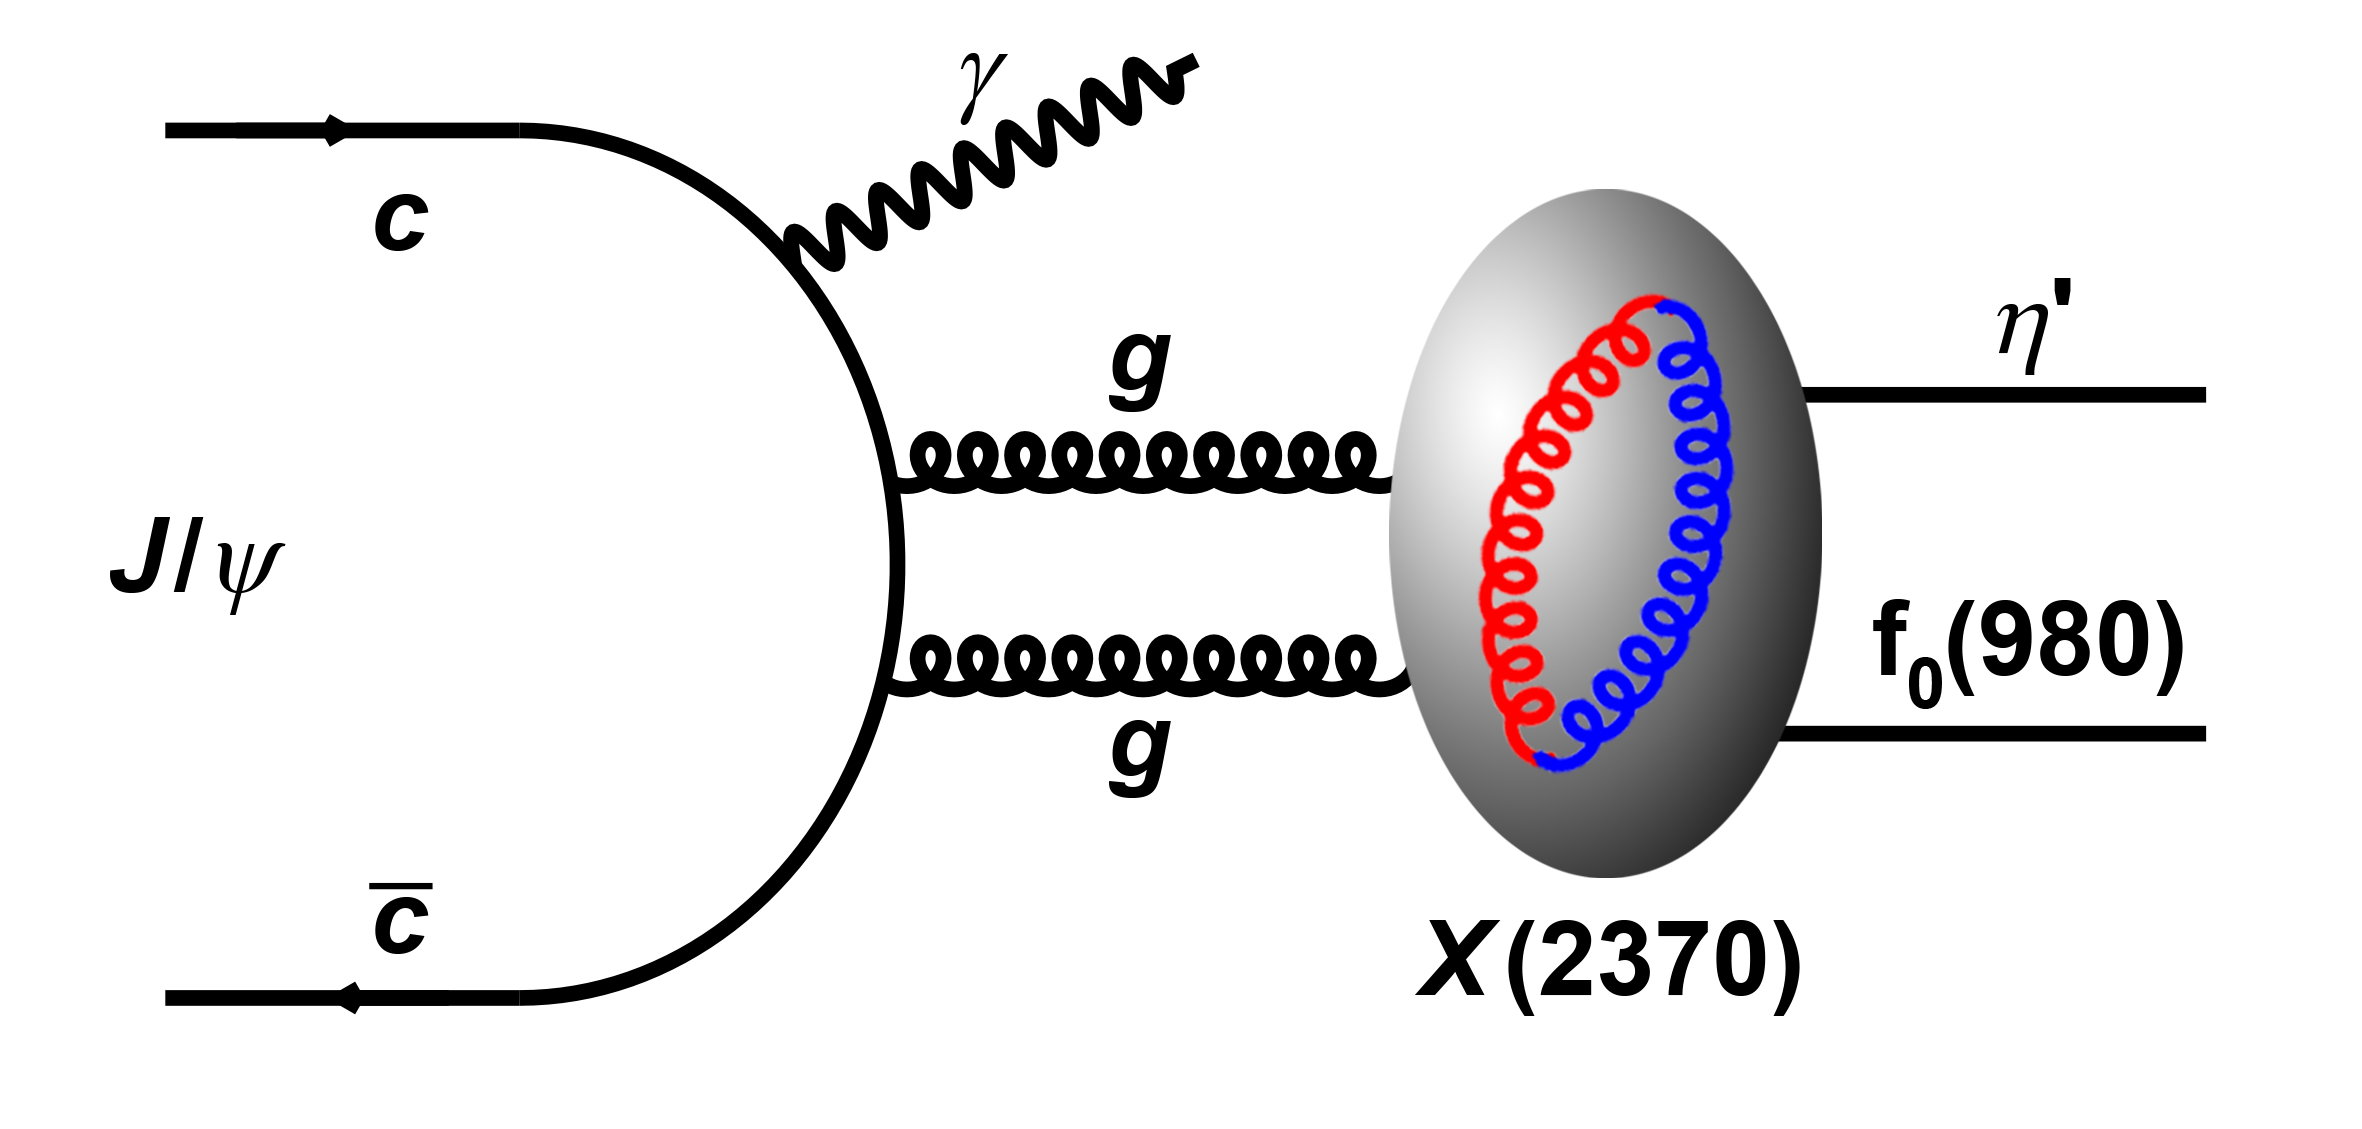 北京谱仪实验首次测定X(2370)粒子自旋宇称量子数 — 支持其赝标量胶球理论解释